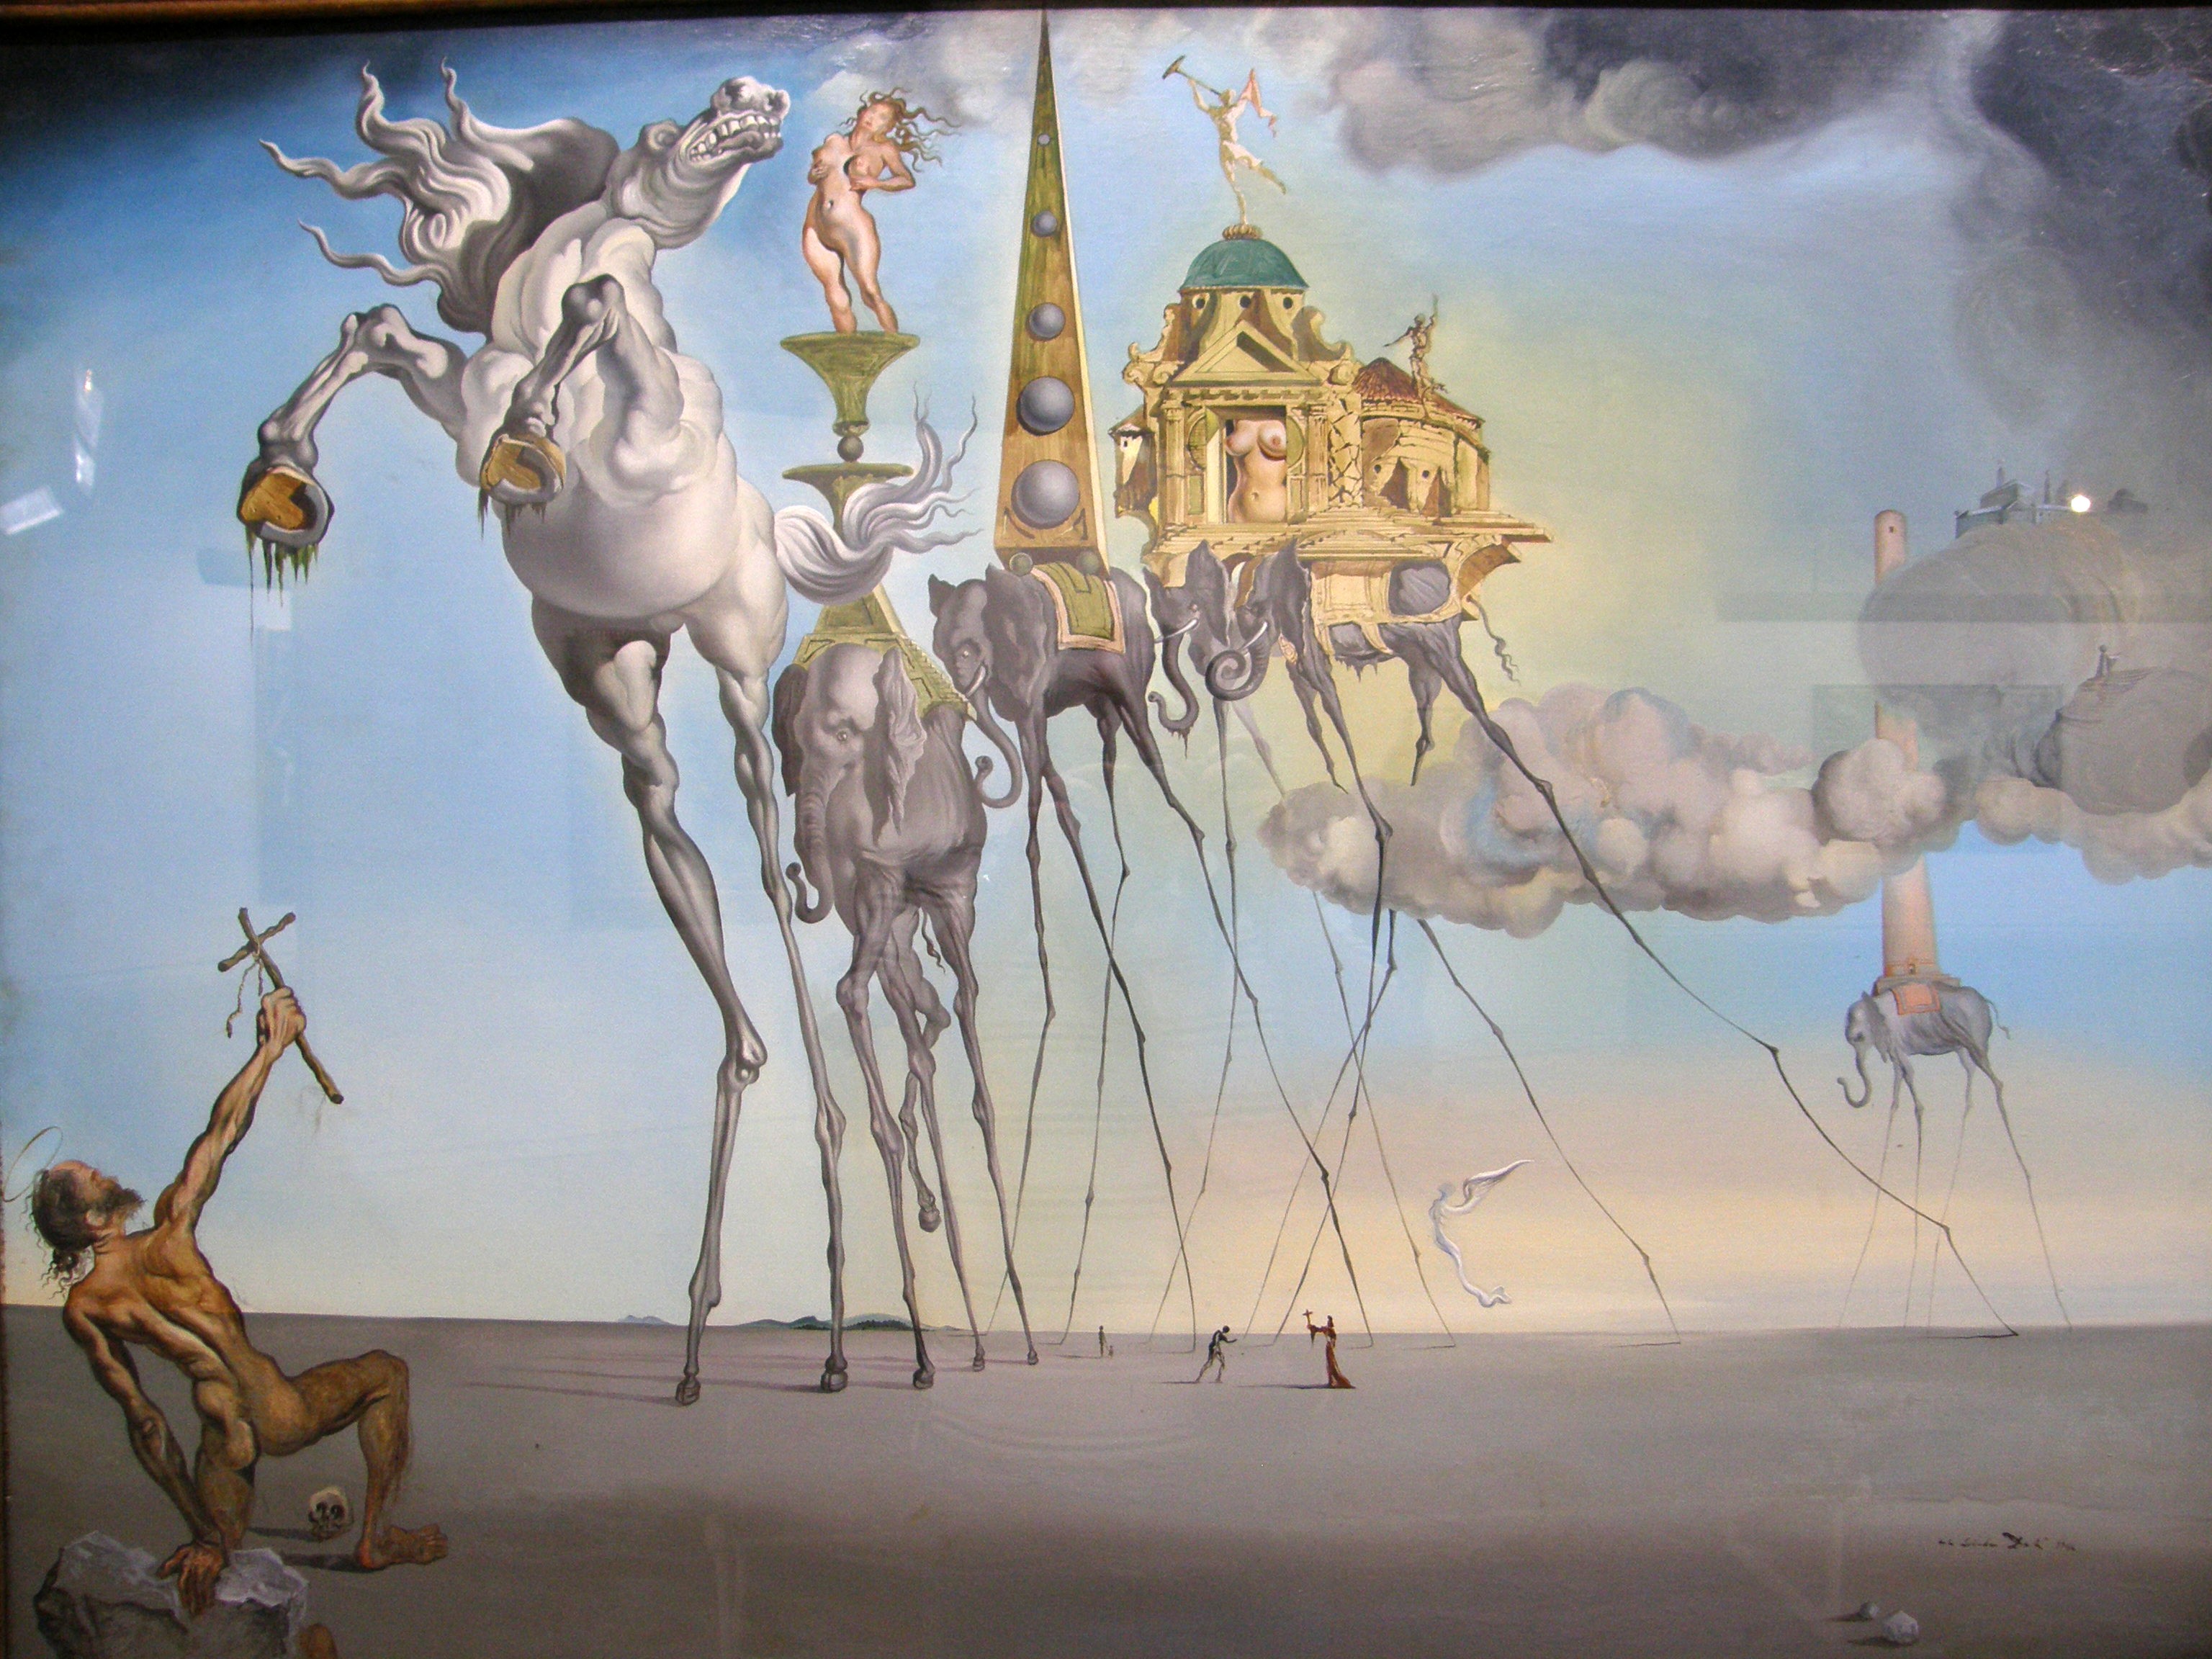 Salvador Dalí (1904-1989), La tentation de saint Antoine, 1946, huile sur toile, 90 x 120 cm, Bruxelles, Musées royaux des beaux-arts de Belgique © Musées royaux des beaux-arts de Belgique 